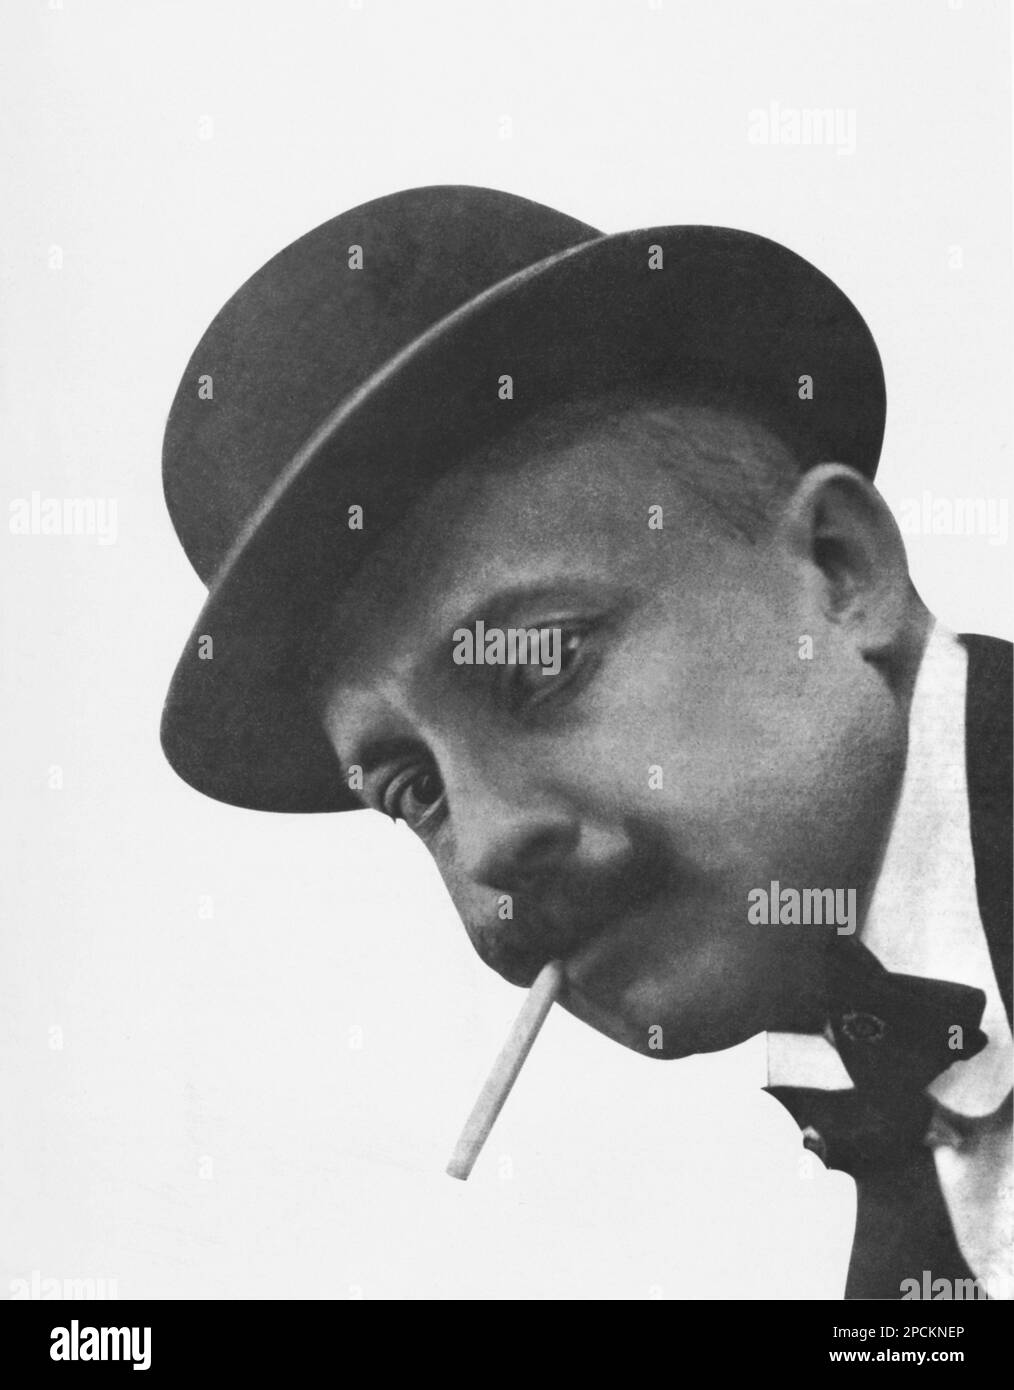 1915 , ITALY : The italian Avantgarde artist FILIPPO TOMMASO MARINETTI ( 1876 - 1944 ) - FUTURISM - FUTURISTA - FUTURIST -   ARTE  - ARTS - TEATRO - THEATER - AVANGUARDIA  - portrait - ritratto - baffi - moustache - derby hat - cappello a bombetta - papillon - cravatta - tie bow - sigaretta - cigarette - smoker - fumatore - LETTERATURA - LITERATURE  --- Archivio GBB Stock Photo